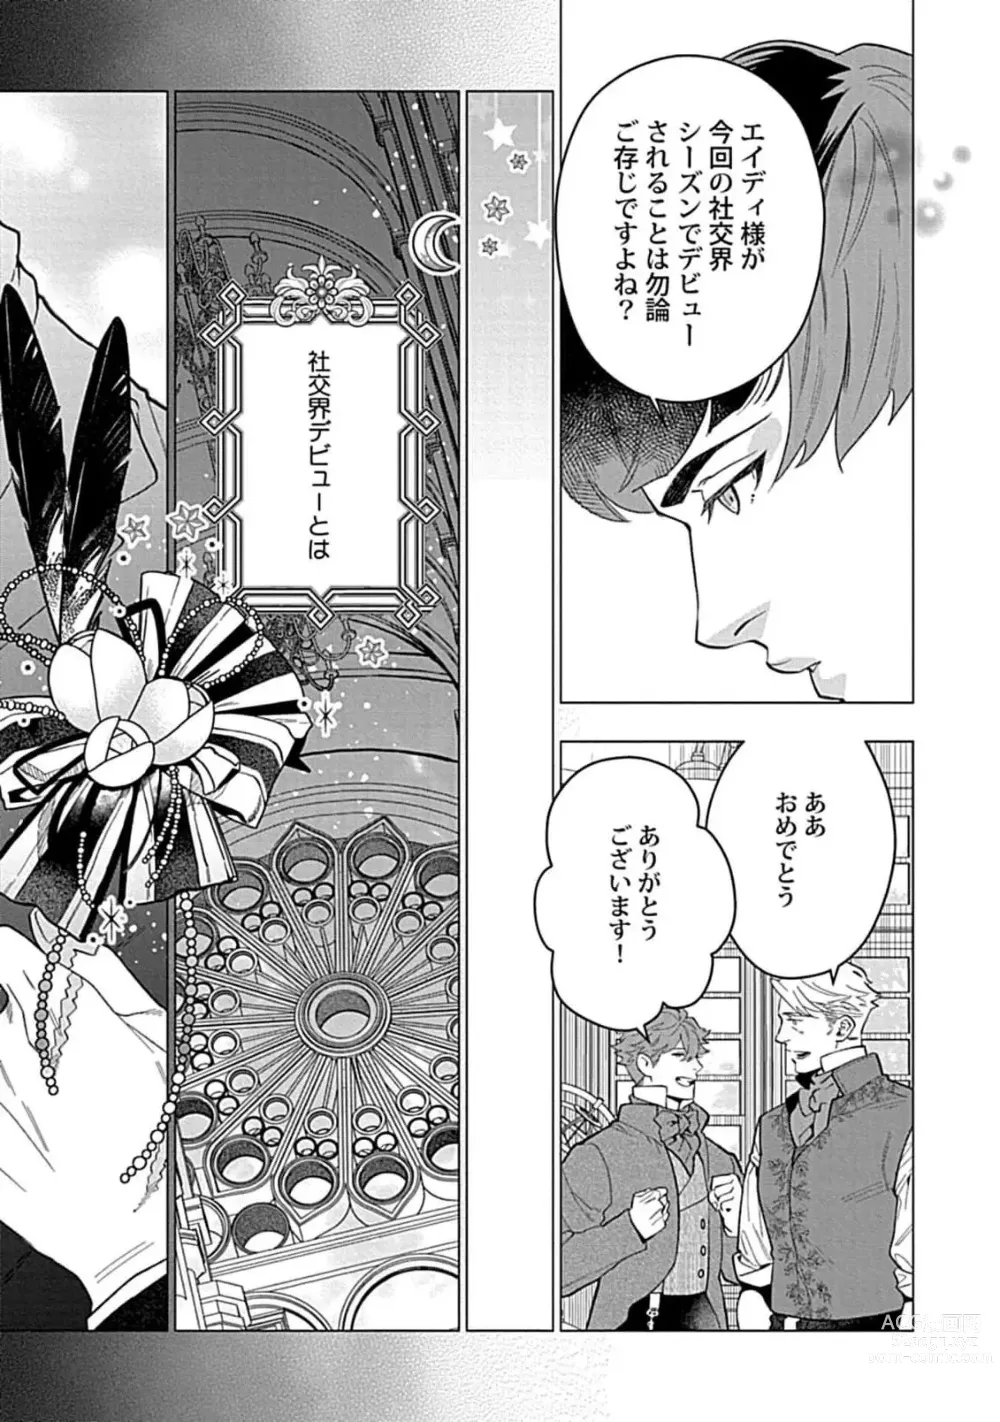 Page 9 of manga Hoshikuzu no Debutante - Debutante of Stardust 1